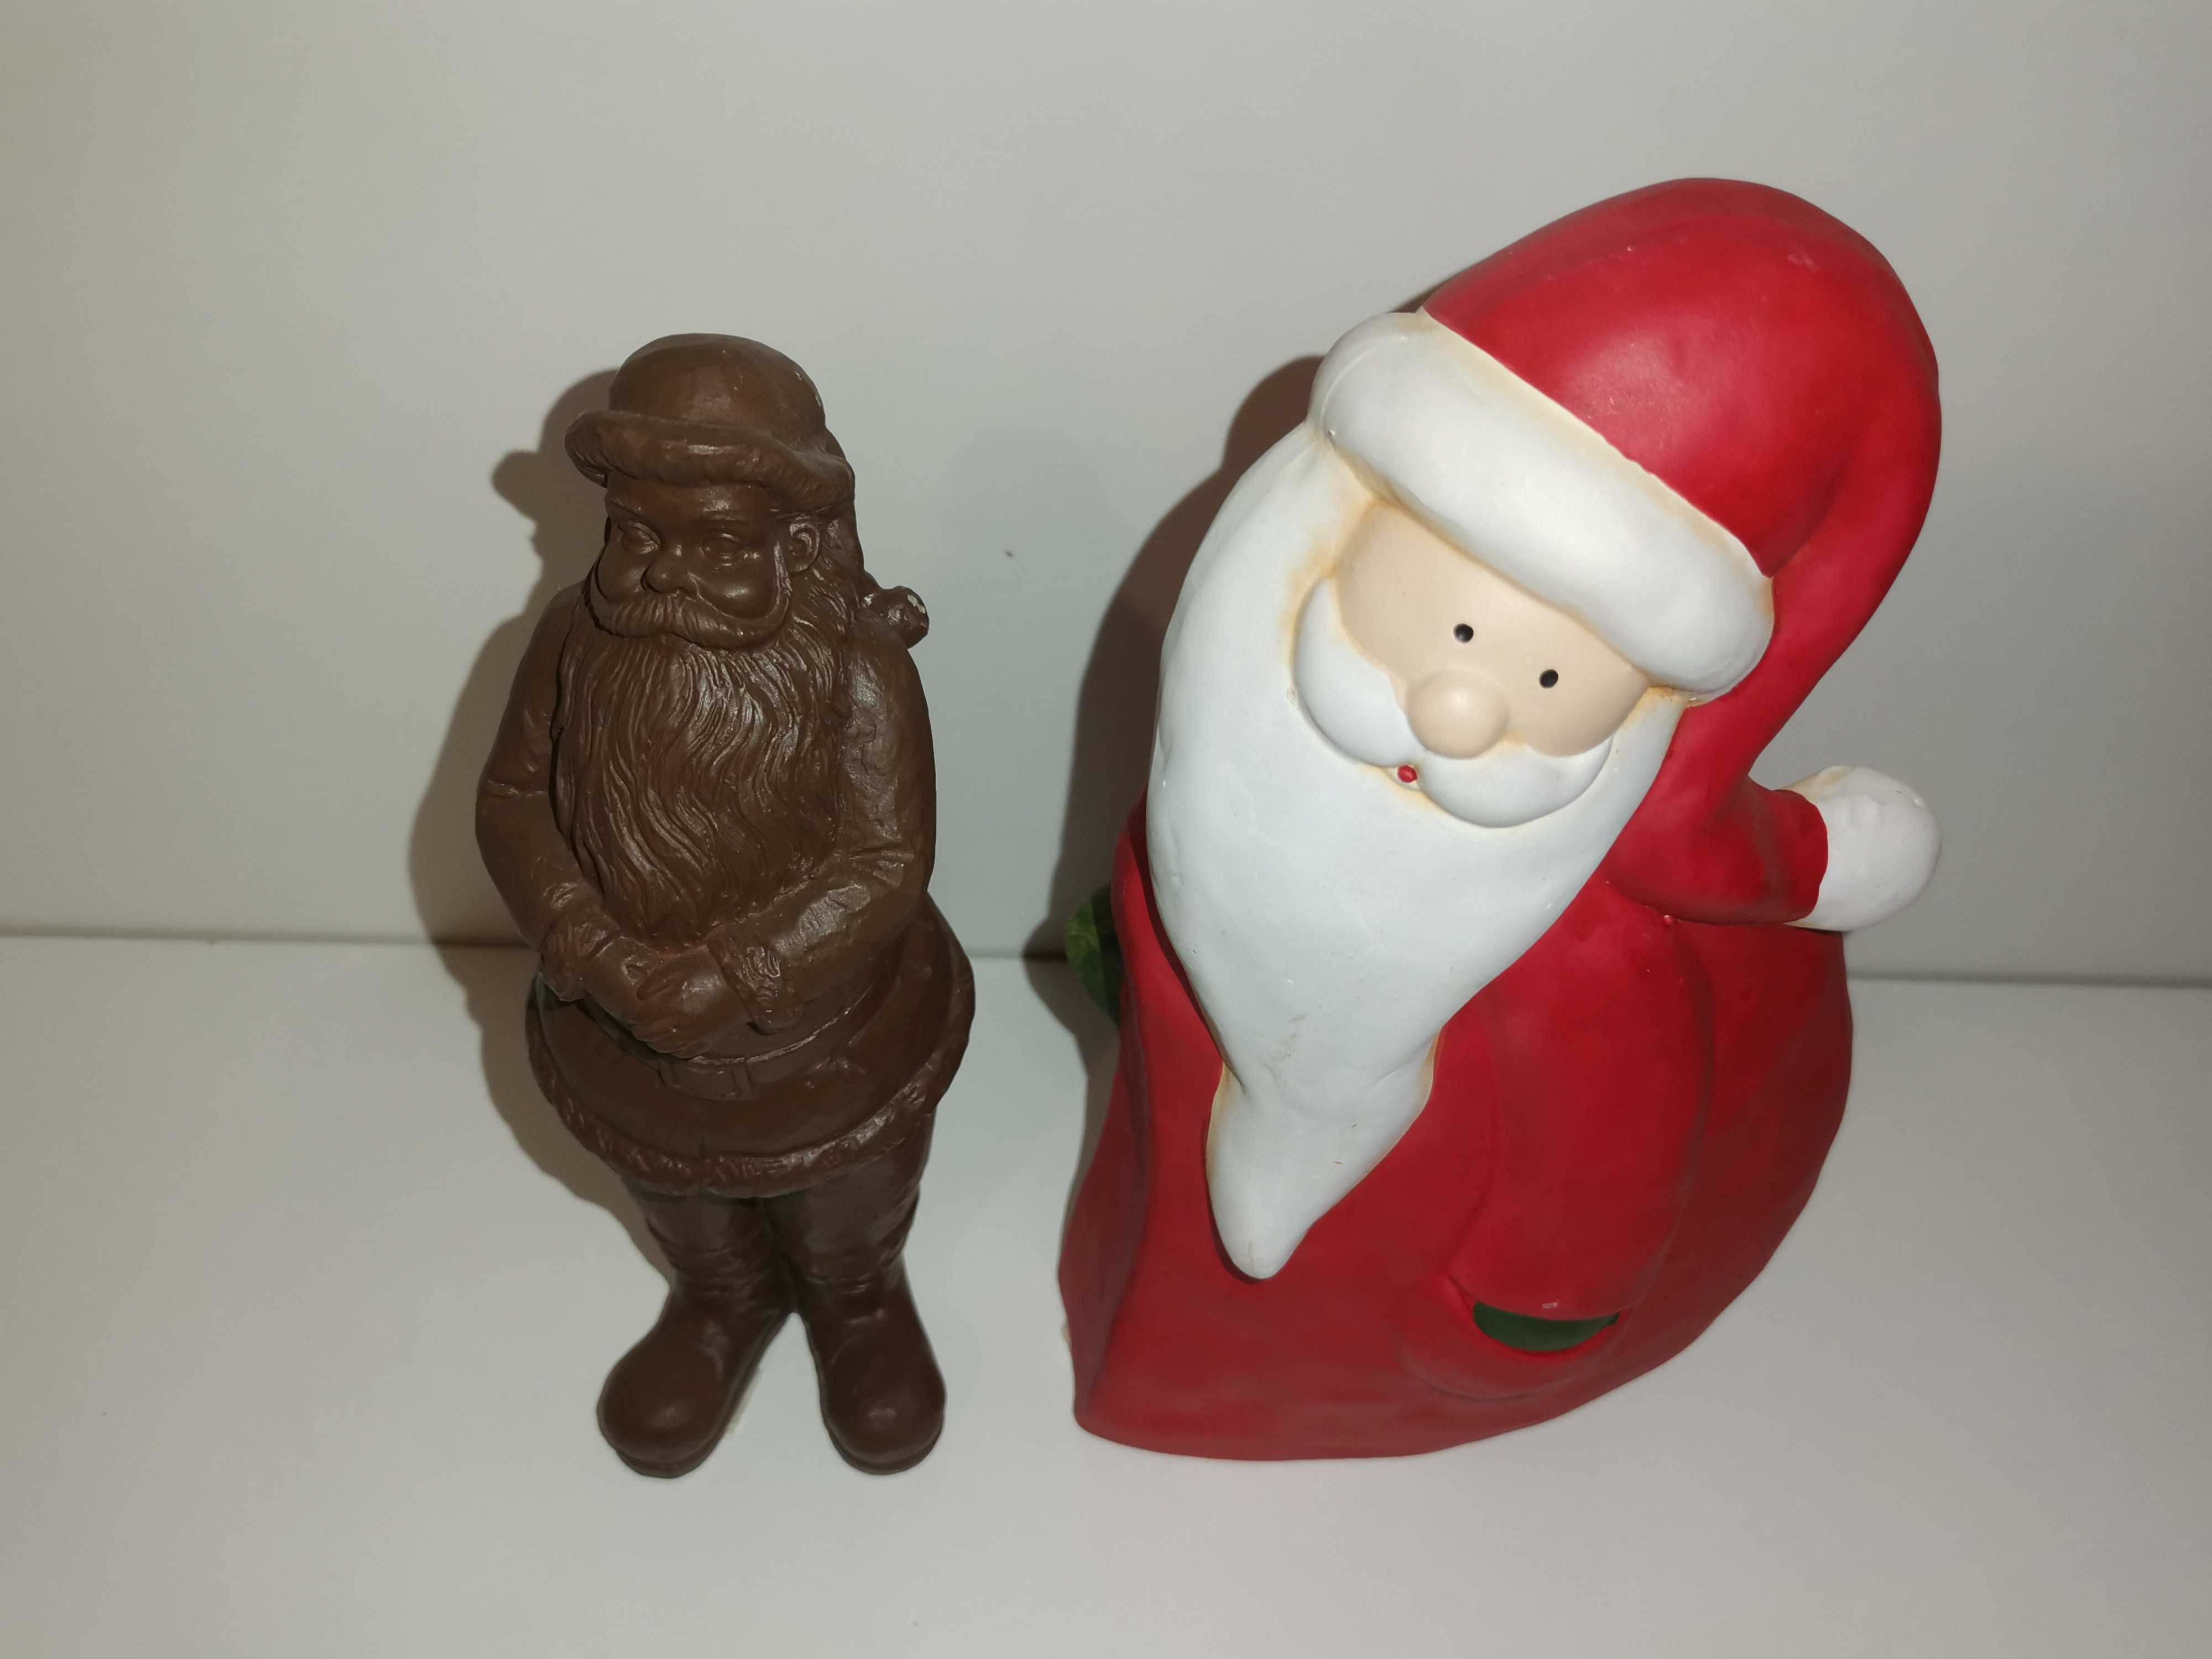 Ozdoby świąteczne - Figurki x 2 - Św. Mikołaj na Boże Narodzenie